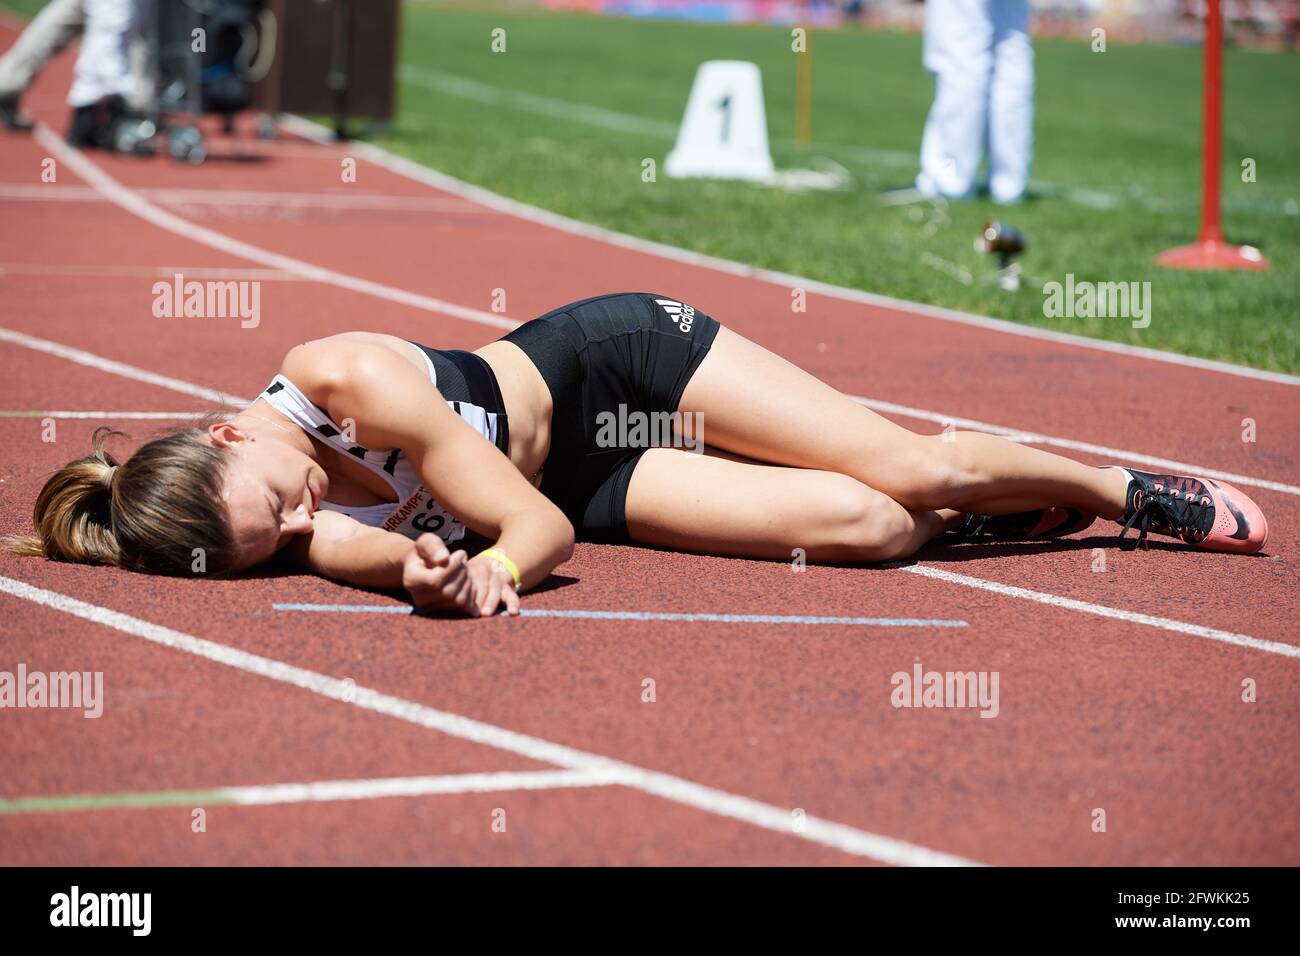 Landquart, Suisse. 23 mai 2021. Lydia Boll ist erschöpft nach dem 800m Lauf am Leichtathletik Siebenkampf Meeting 2021 in Landquart. Banque D'Images